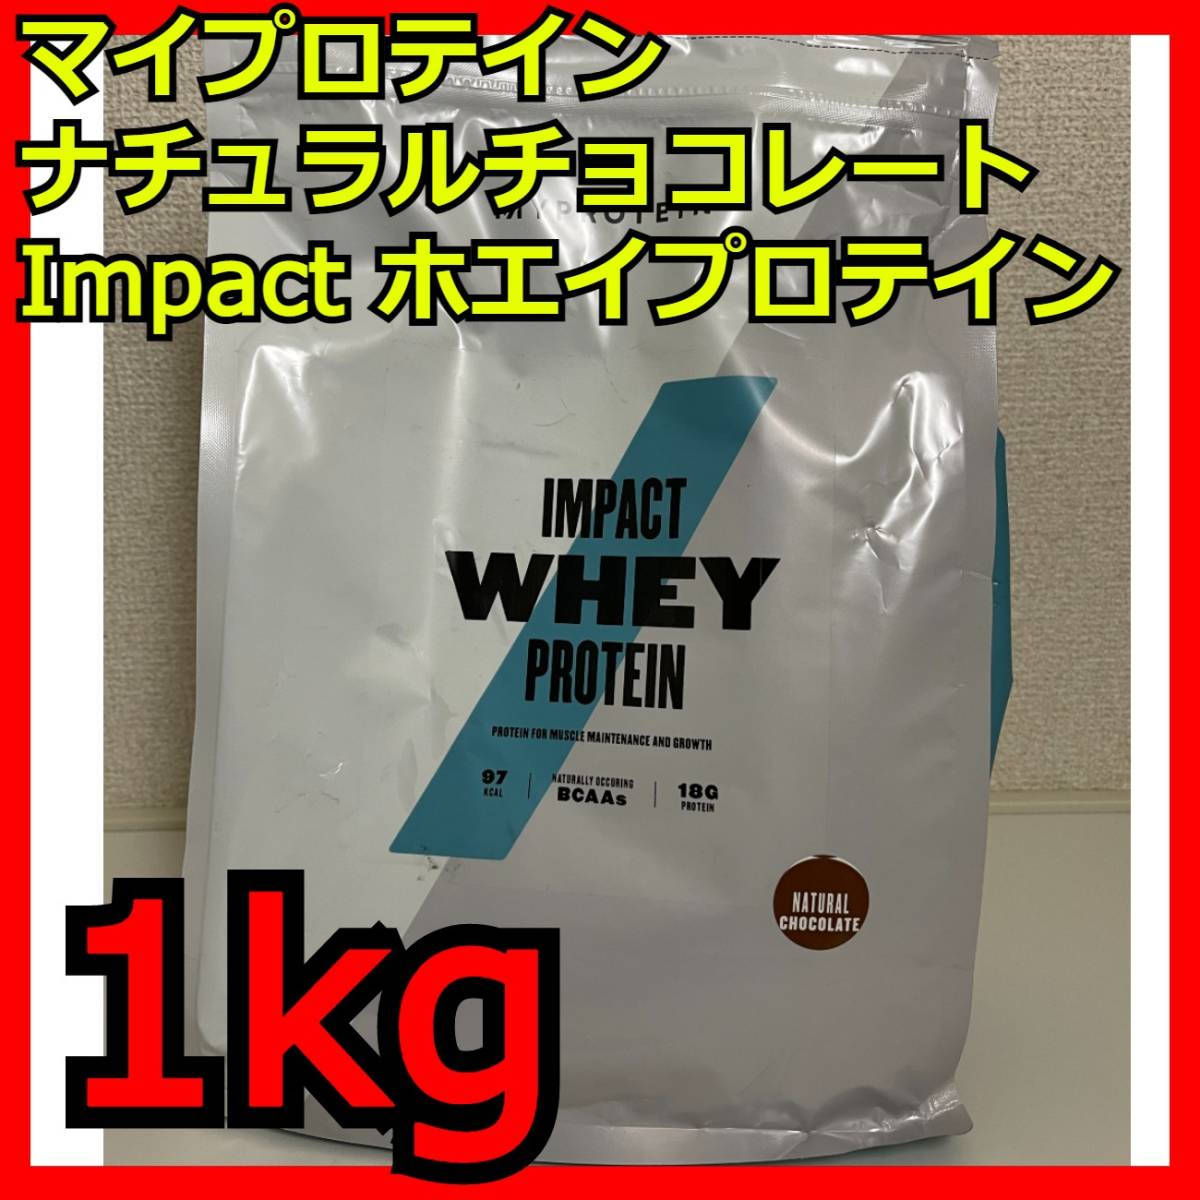 ナチュラルチョコレート 1kg Impact ホエイプロテイン マイプロテイン MYPROTEIN eaa hmb bcaa 2.5kg 5kg タンパク質 アミノ酸 ビタミン_画像1